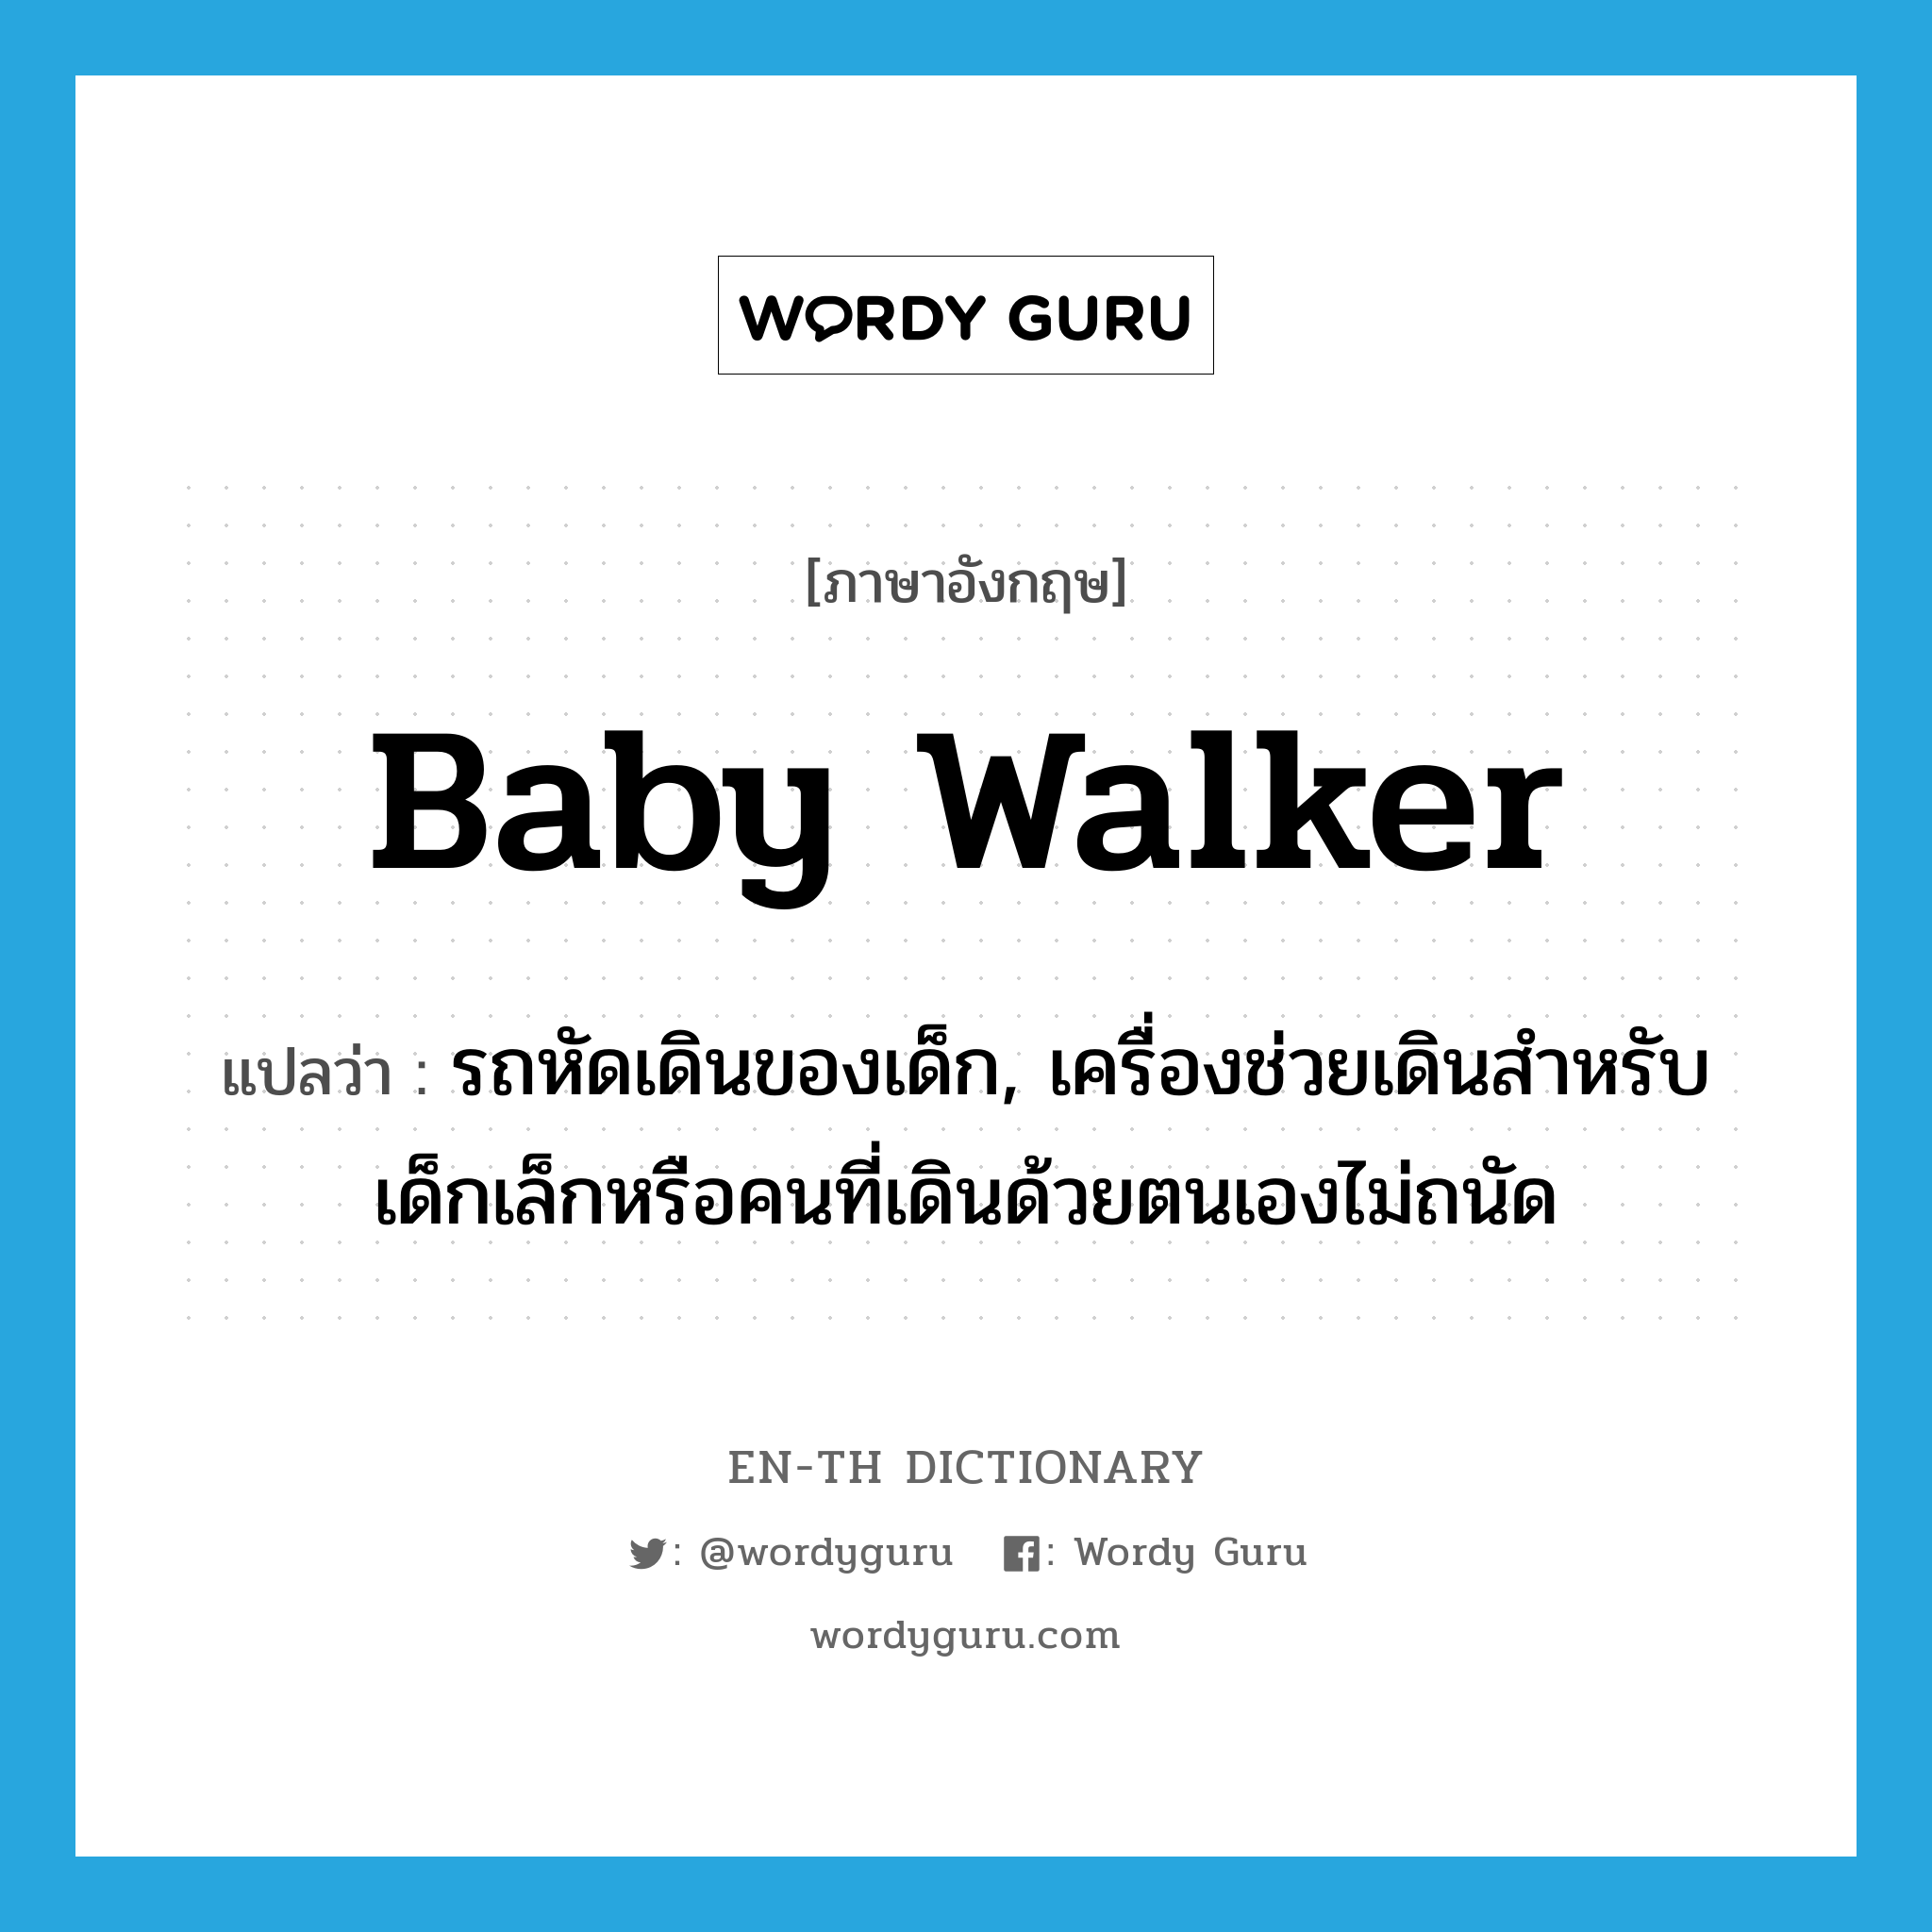 baby walker แปลว่า?, คำศัพท์ภาษาอังกฤษ baby walker แปลว่า รถหัดเดินของเด็ก, เครื่องช่วยเดินสำหรับเด็กเล็กหรือคนที่เดินด้วยตนเองไม่ถนัด ประเภท N หมวด N